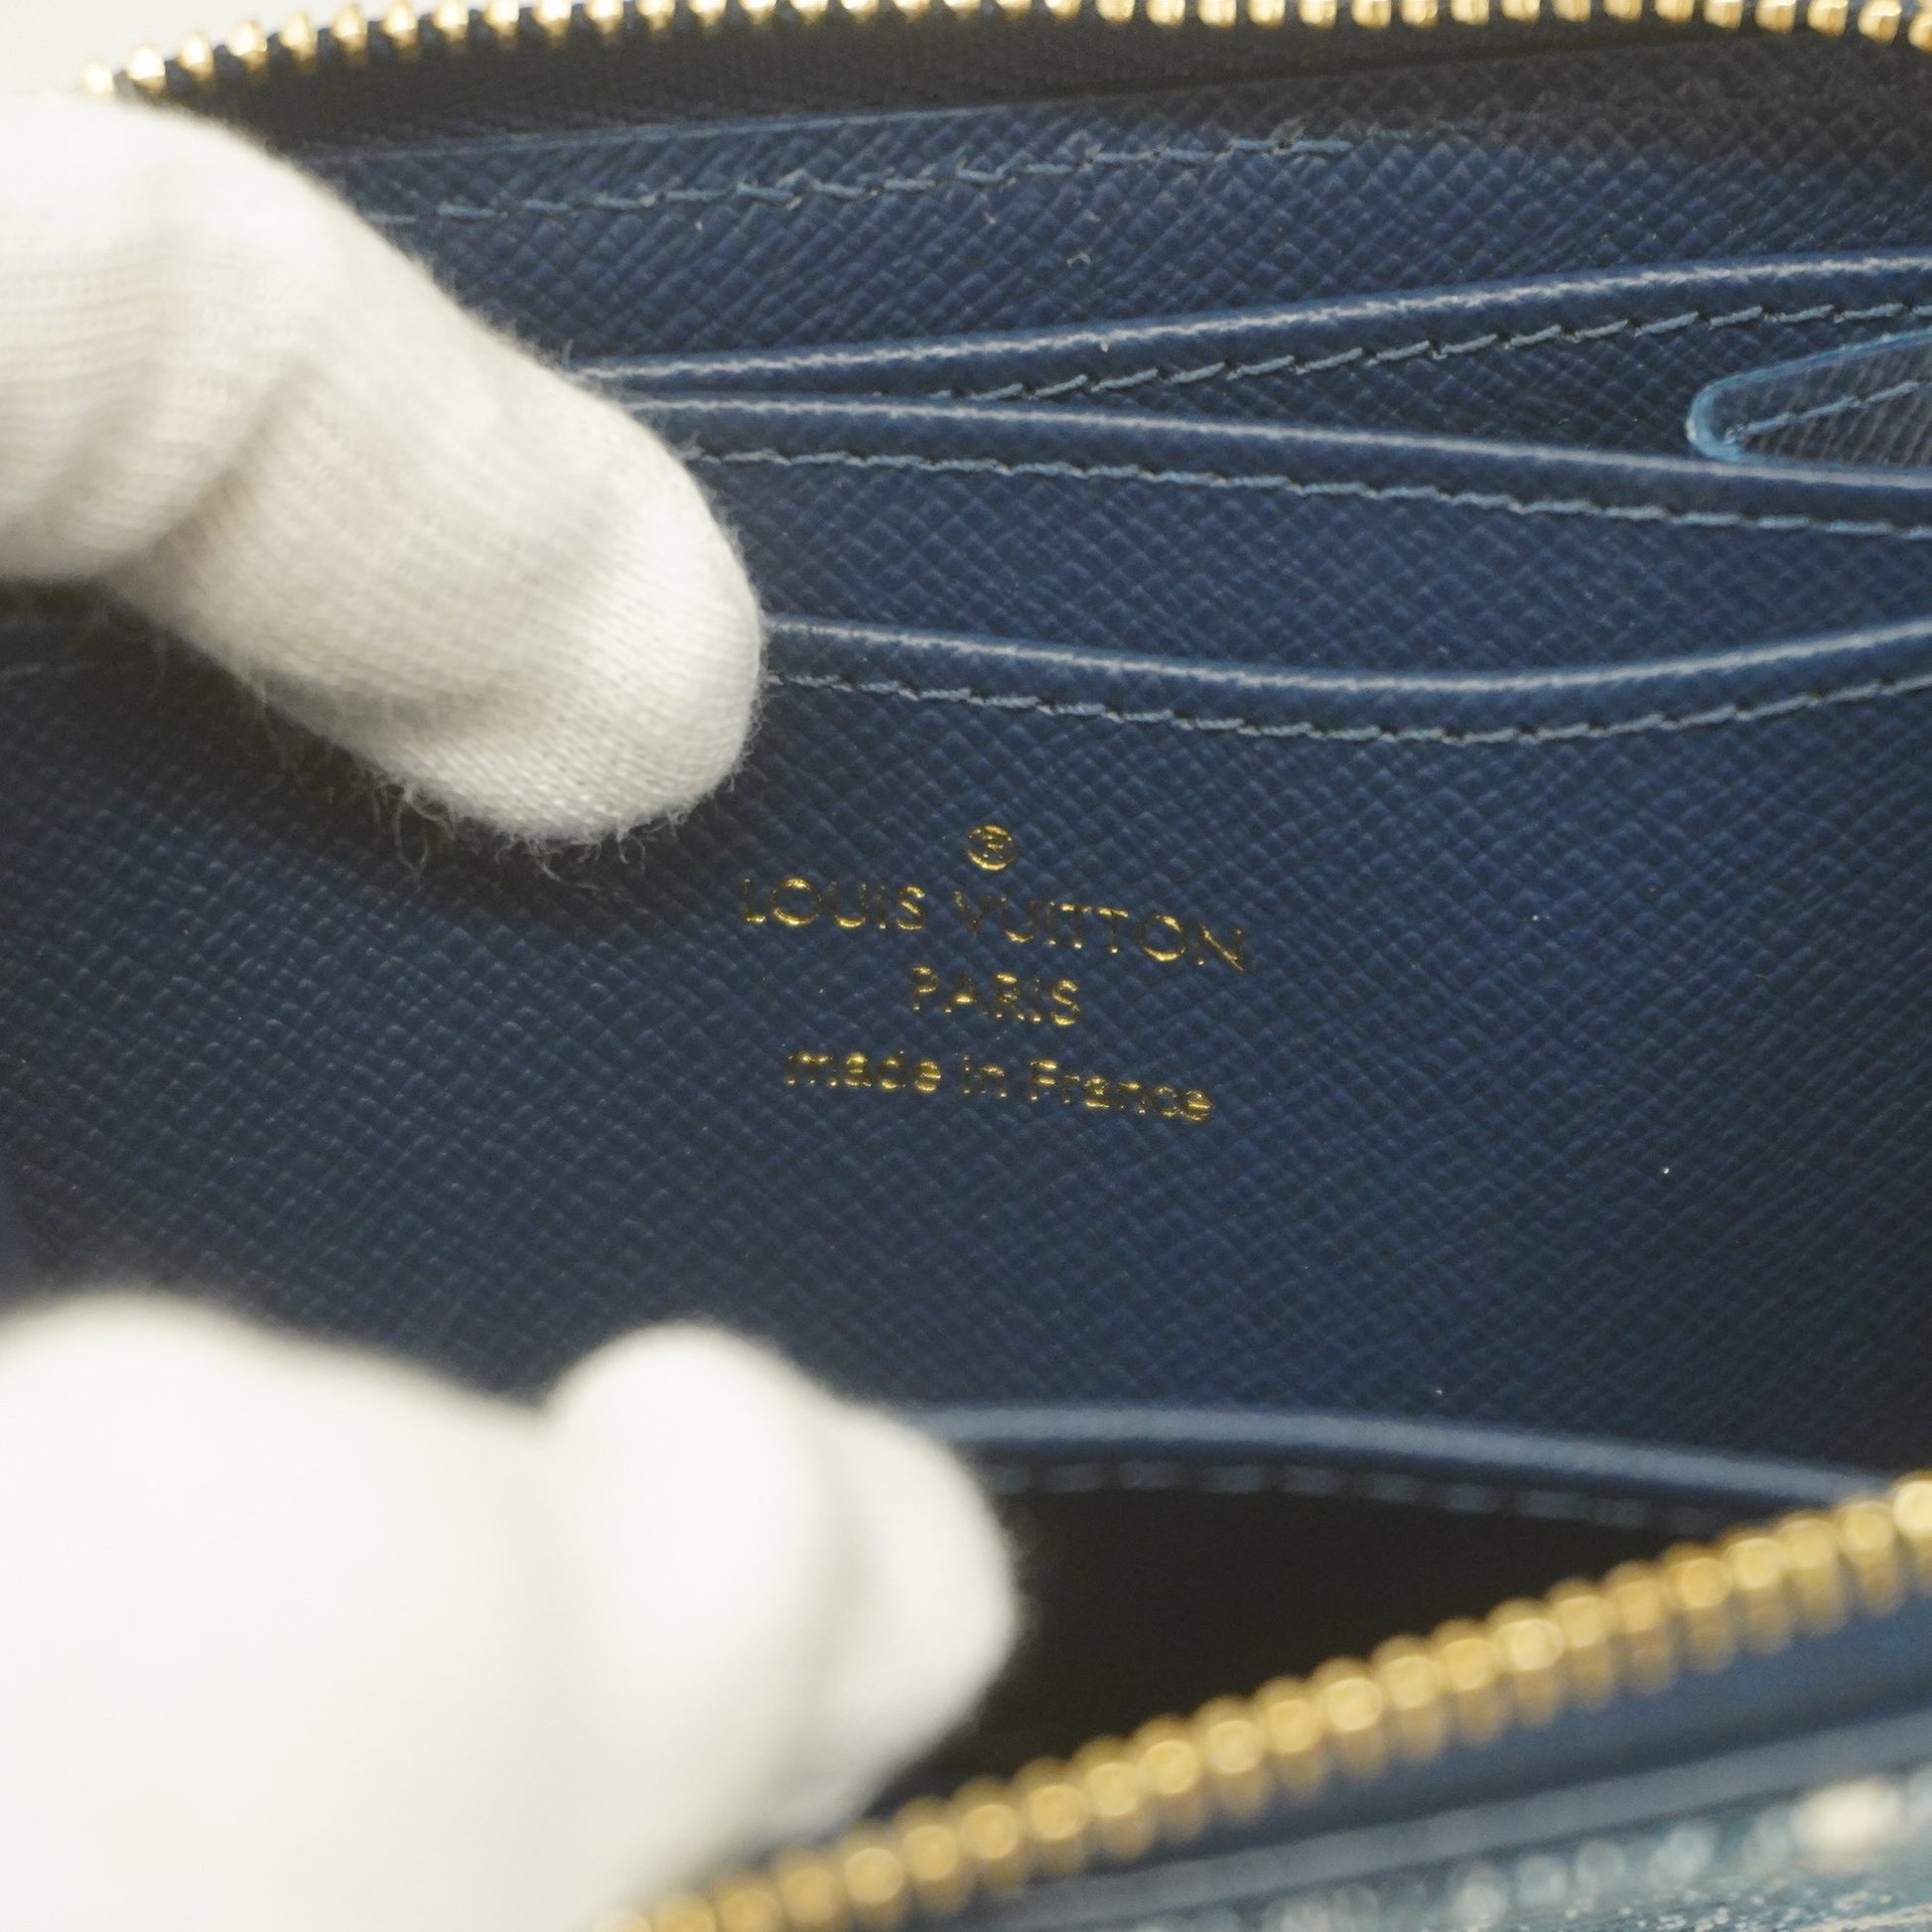 Auth Louis Vuitton Monogram Jacquard Denim Zippy Coin Purse M81185 Blue